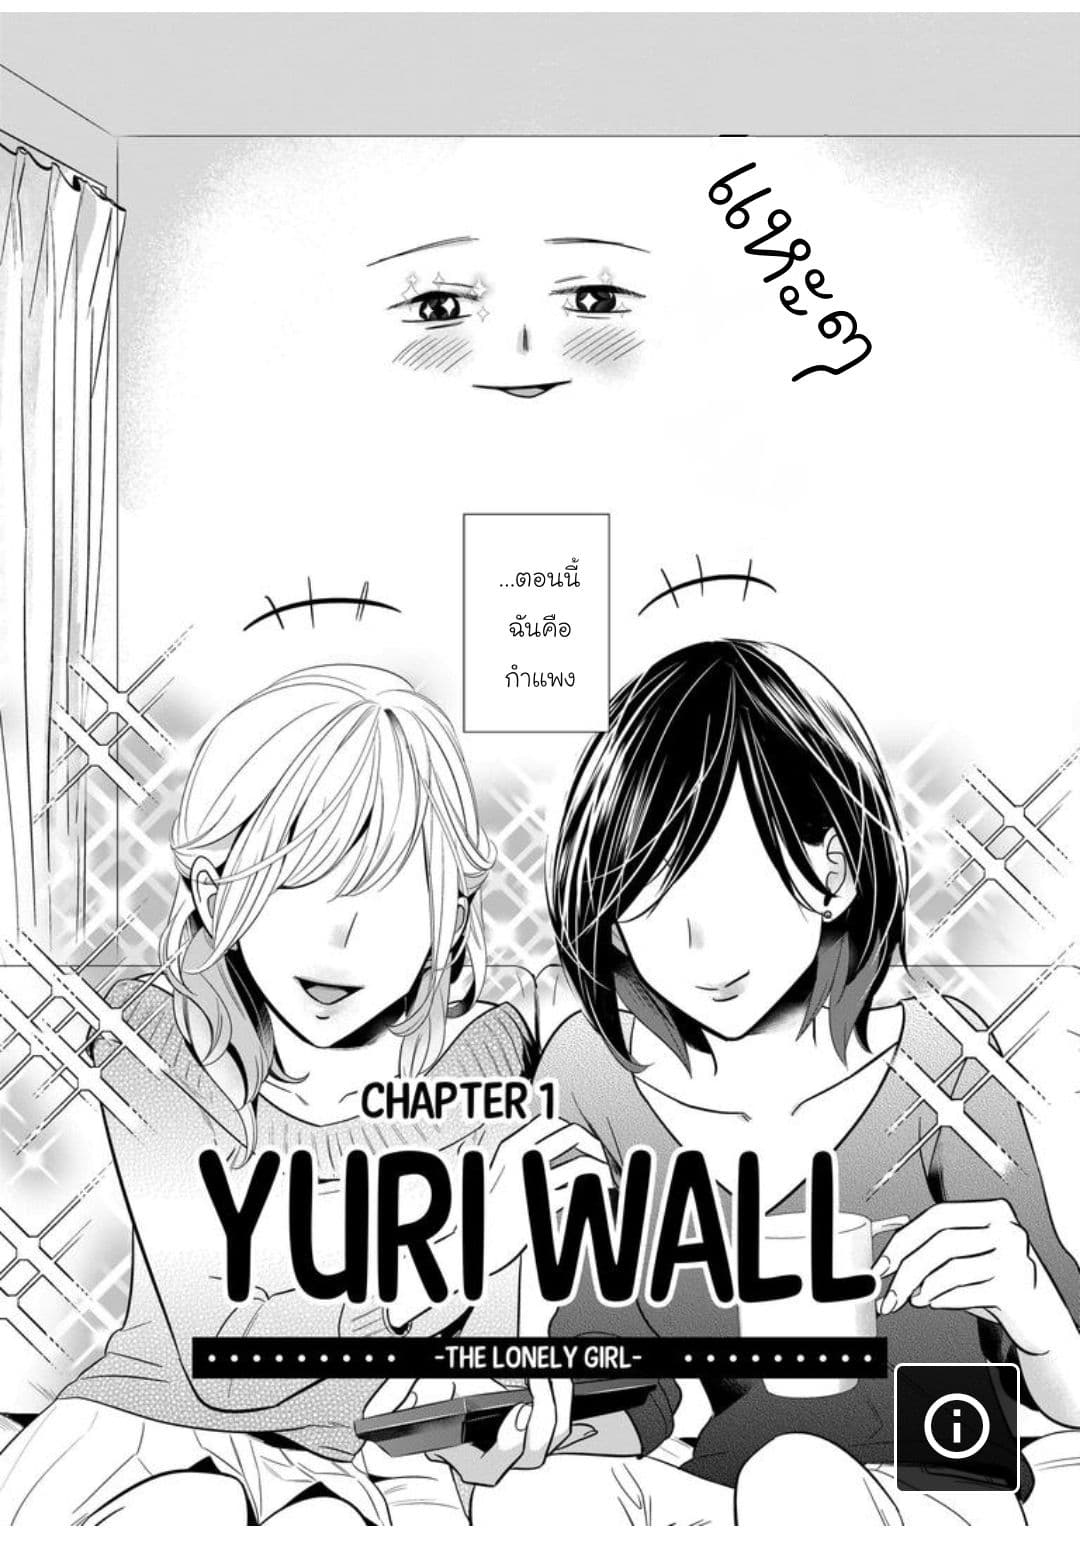 Yuri Wall 1 (4)